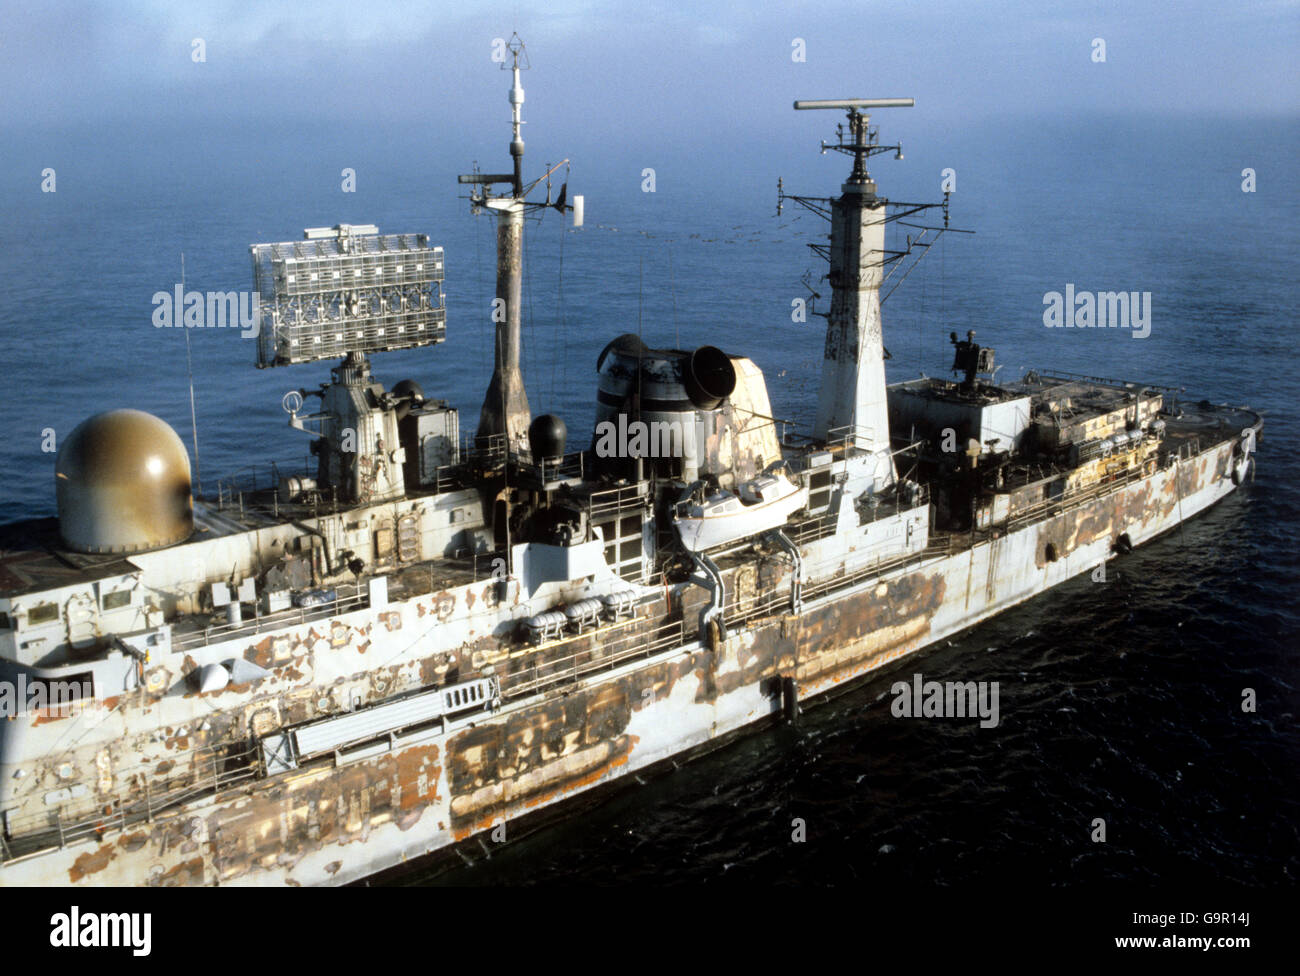 Die verkohlten Überreste der HMS Sheffield, nachdem sie am 4. Mai von einer argentinischen Execet-Rakete getroffen wurde und die am 10. Mai sank, während sie zu sicherem Wasser außerhalb der Total Exclusion Zone im Südatlantik geschleppt wurde. Stockfoto